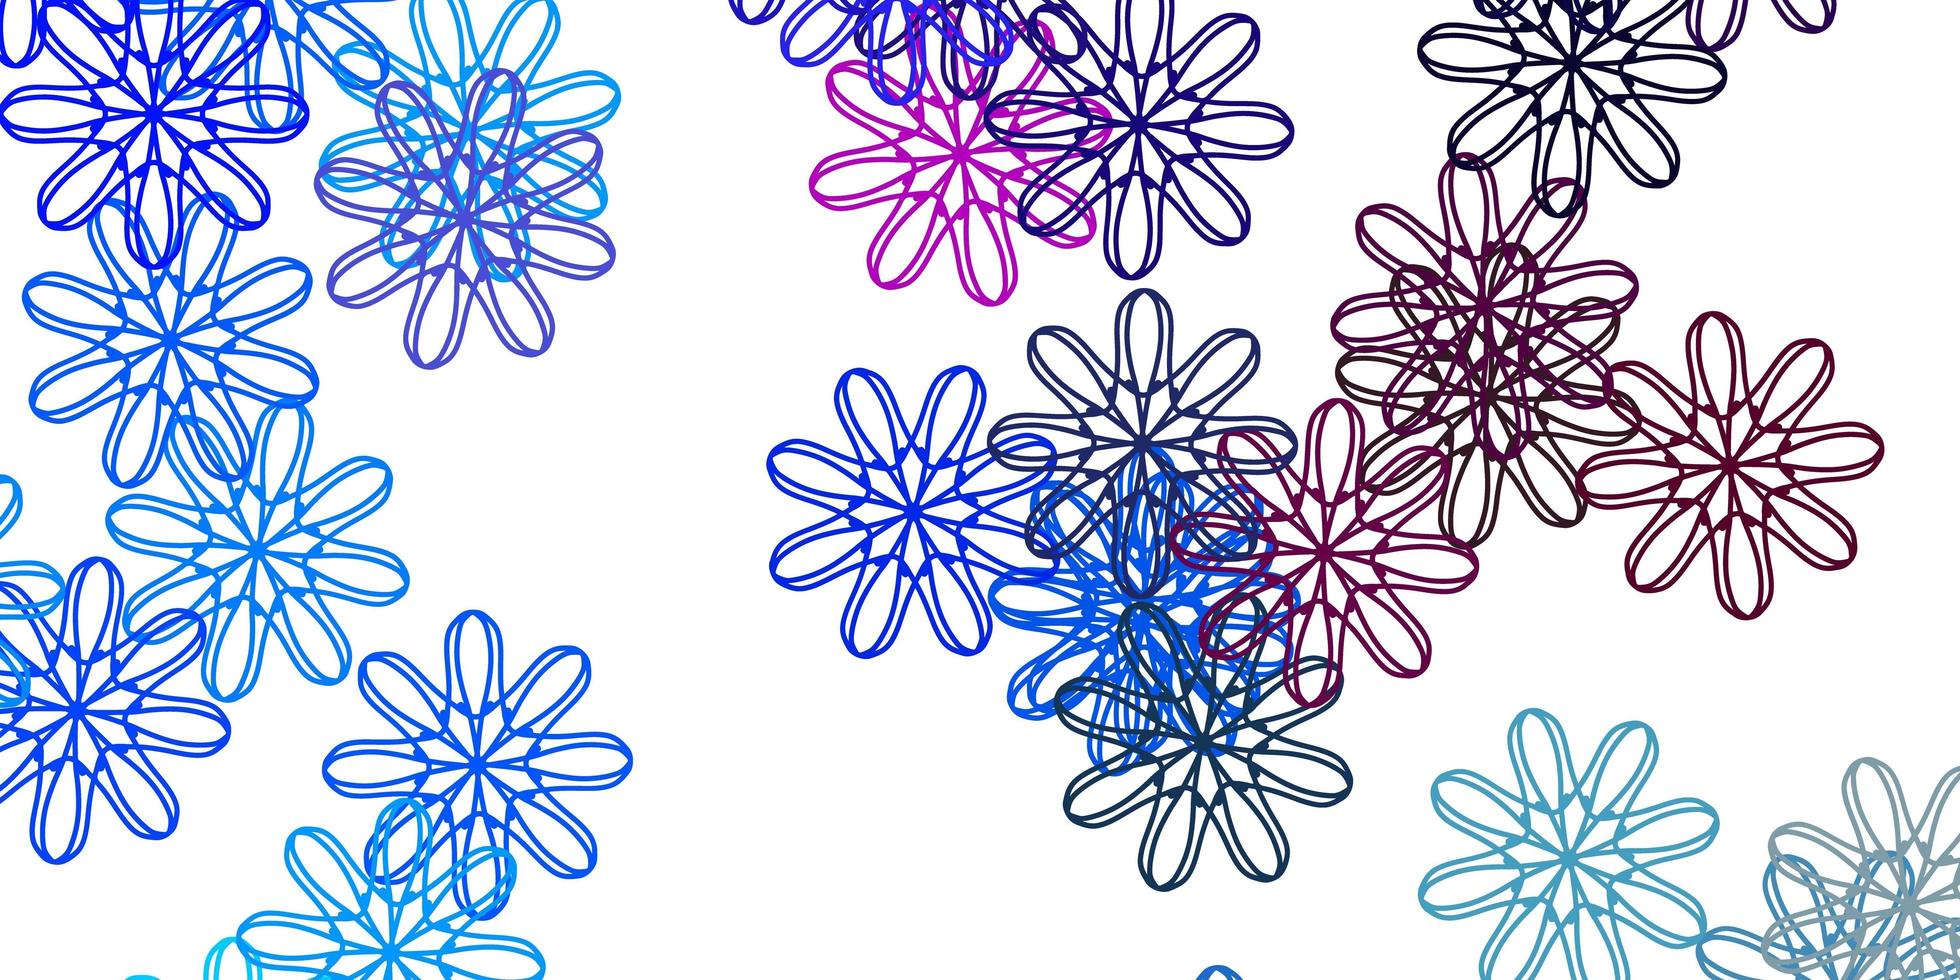 modello doodle vettoriale rosa chiaro, blu con fiori.